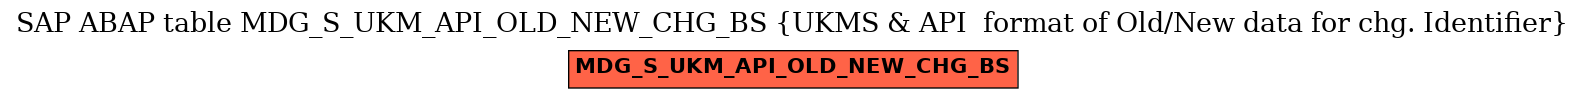 E-R Diagram for table MDG_S_UKM_API_OLD_NEW_CHG_BS (UKMS & API  format of Old/New data for chg. Identifier)